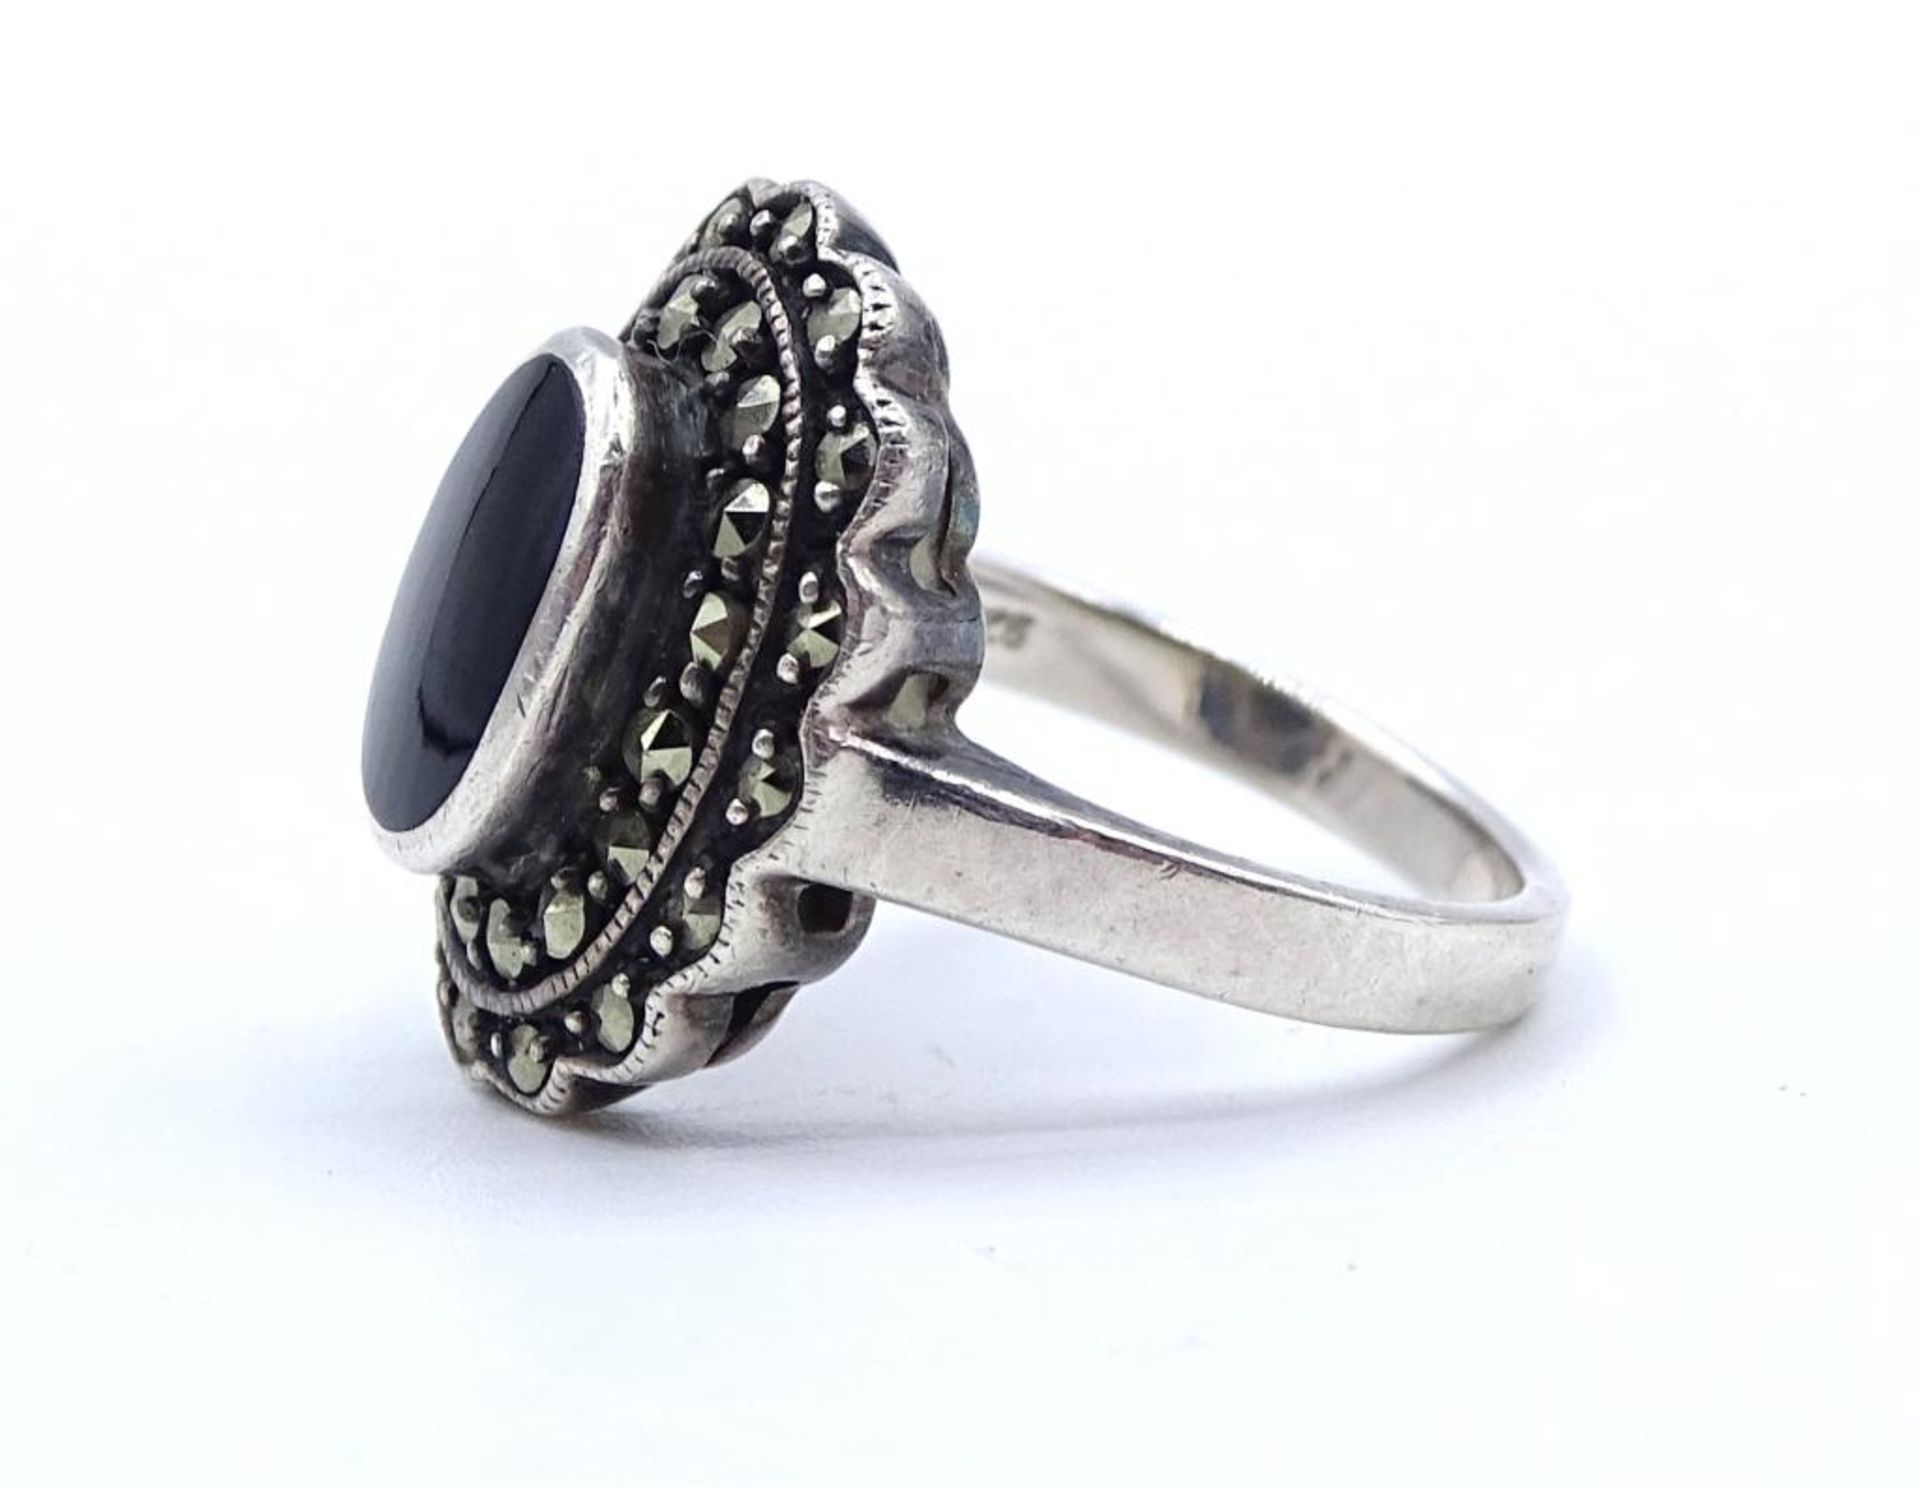 Markasiten Silber Ring mit einen schwarzen Stein in ovaler Form, 5,2gr., Silber 925/000,RG 52 - Image 3 of 4